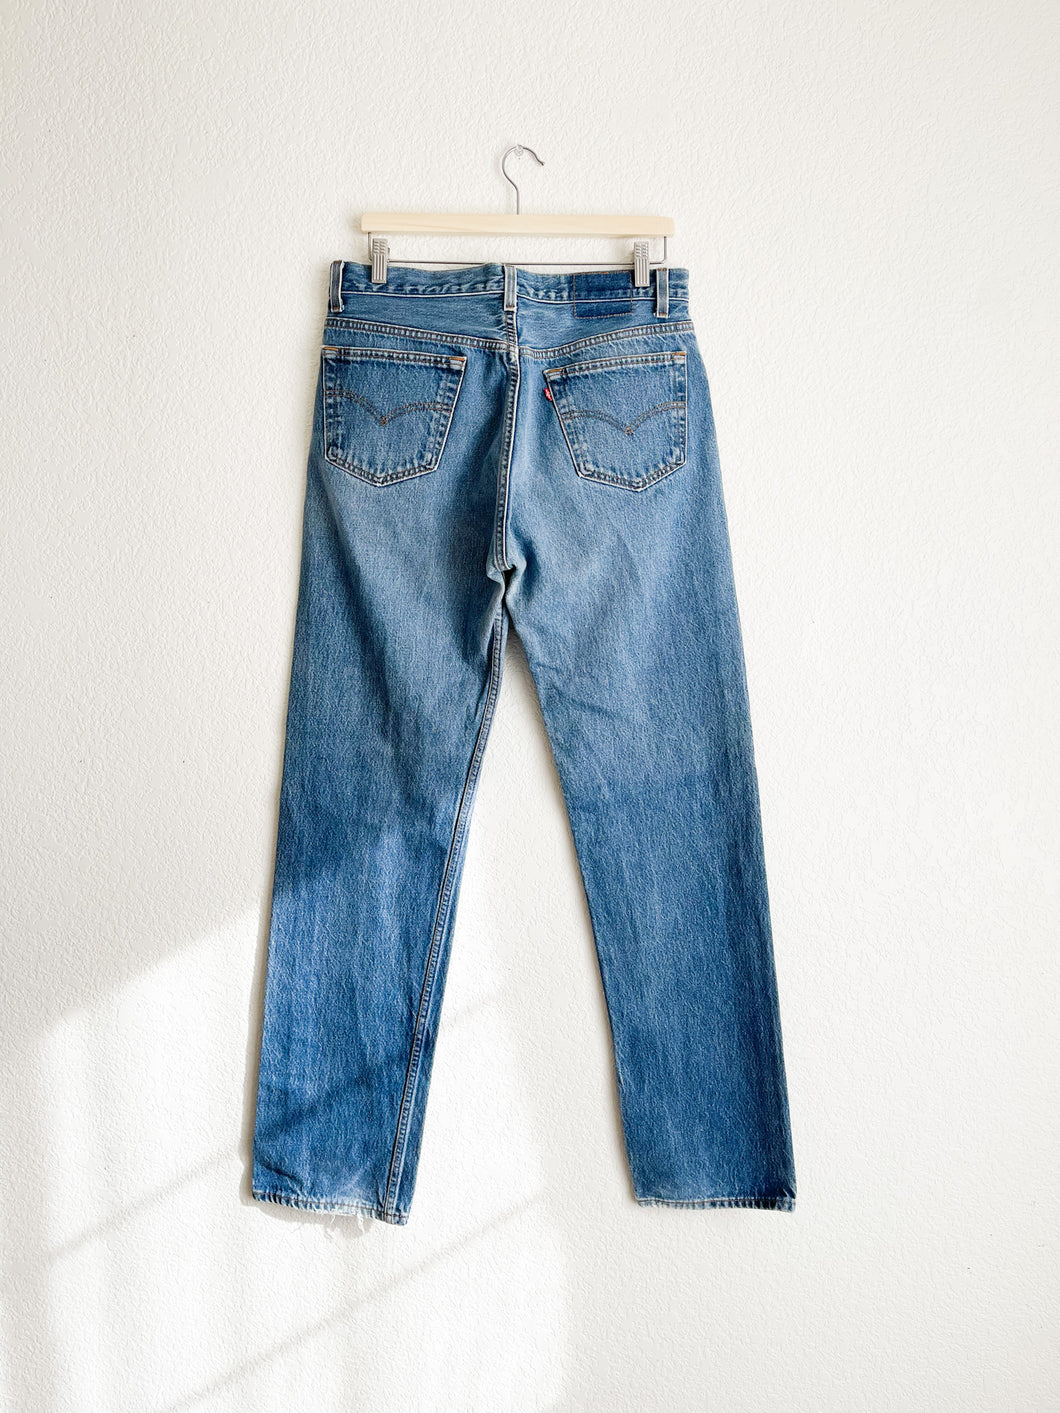 Vintage Levi's 501 Jeans - 32.5